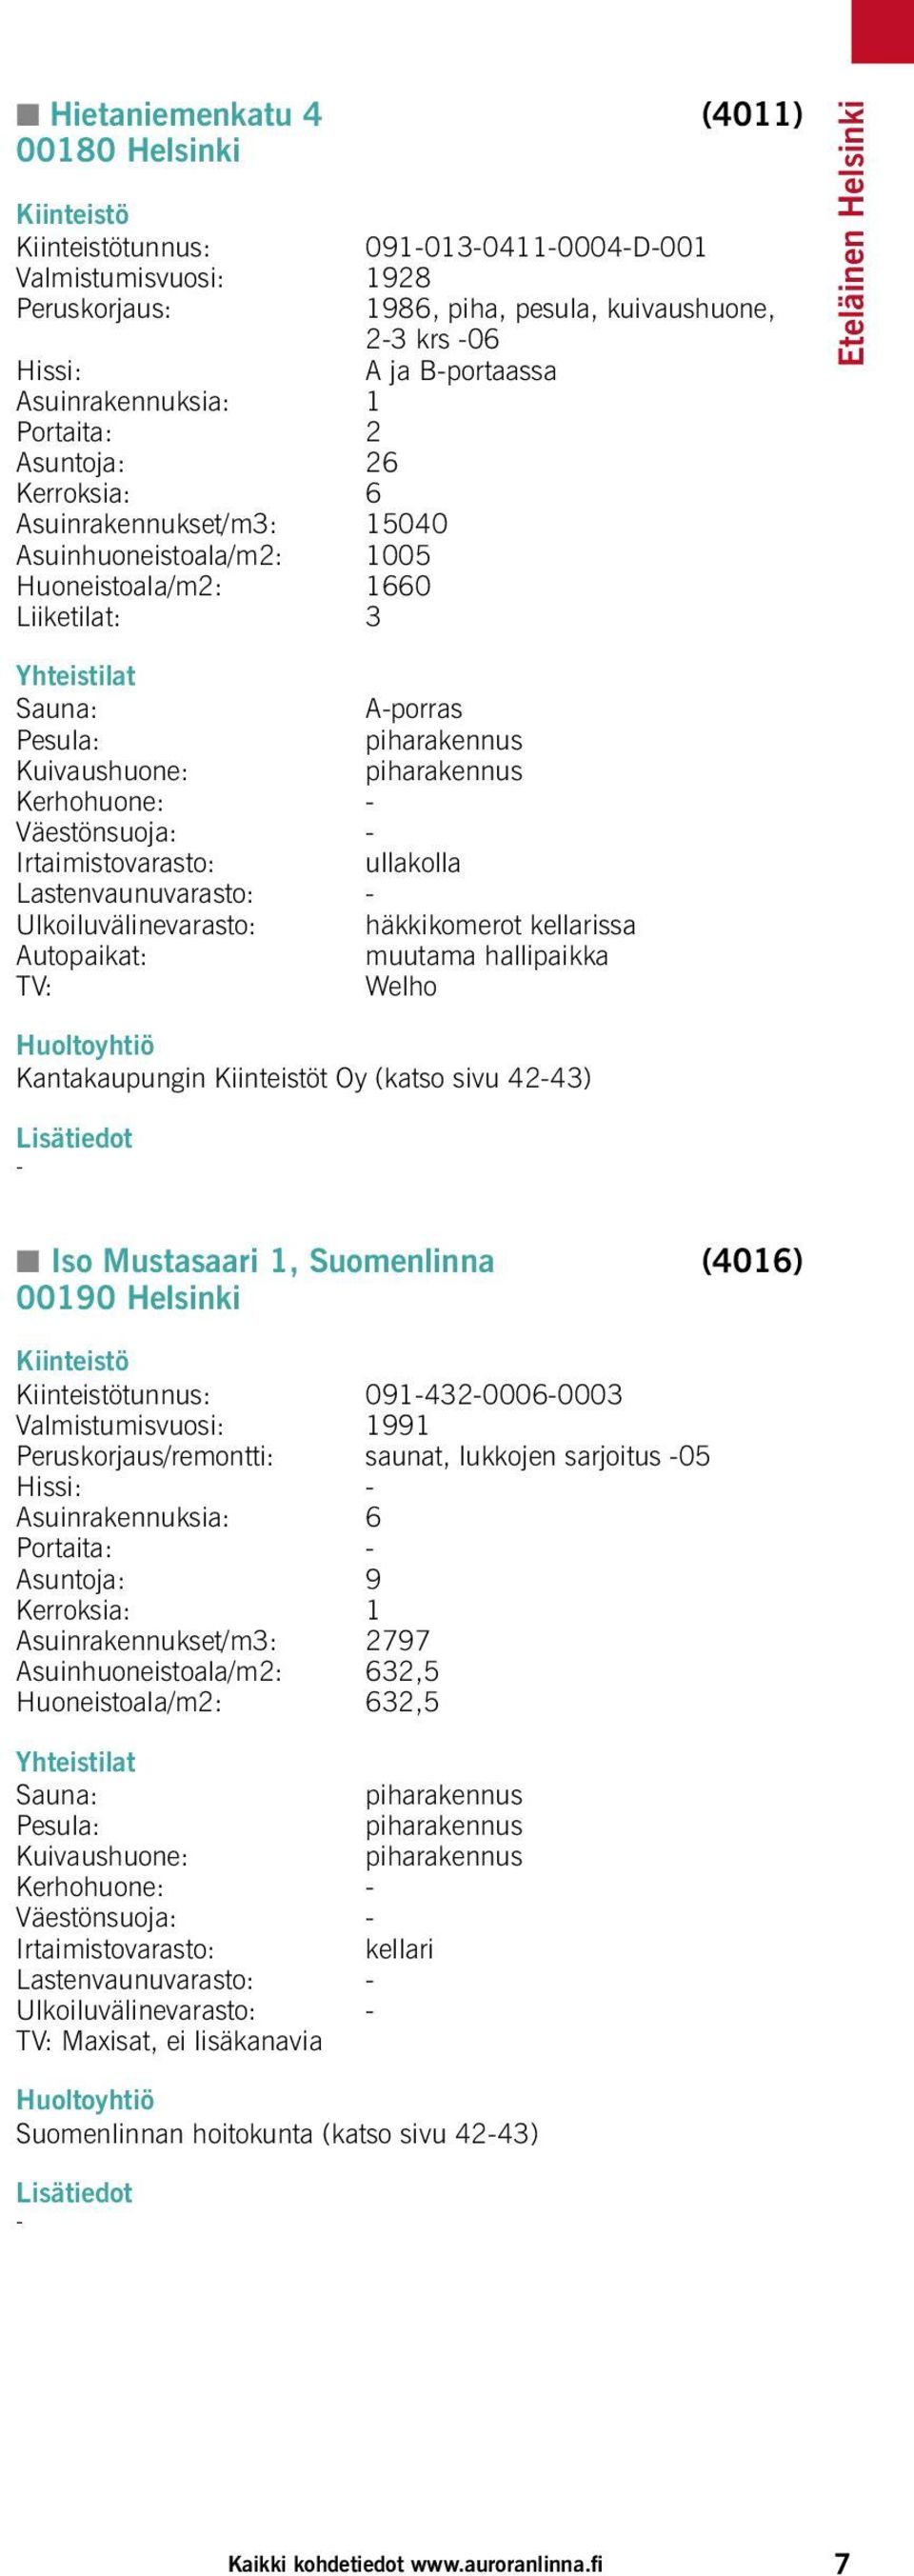 kellarissa muutama hallipaikka yhtiö Kantakaupungin t Oy (katso sivu 4243) Lisätiedot K Iso Mustasaari 1, Suomenlinna (4016) 00190 Helsinki tunnus: 09143200060003 Valmistumisvuosi: 1991